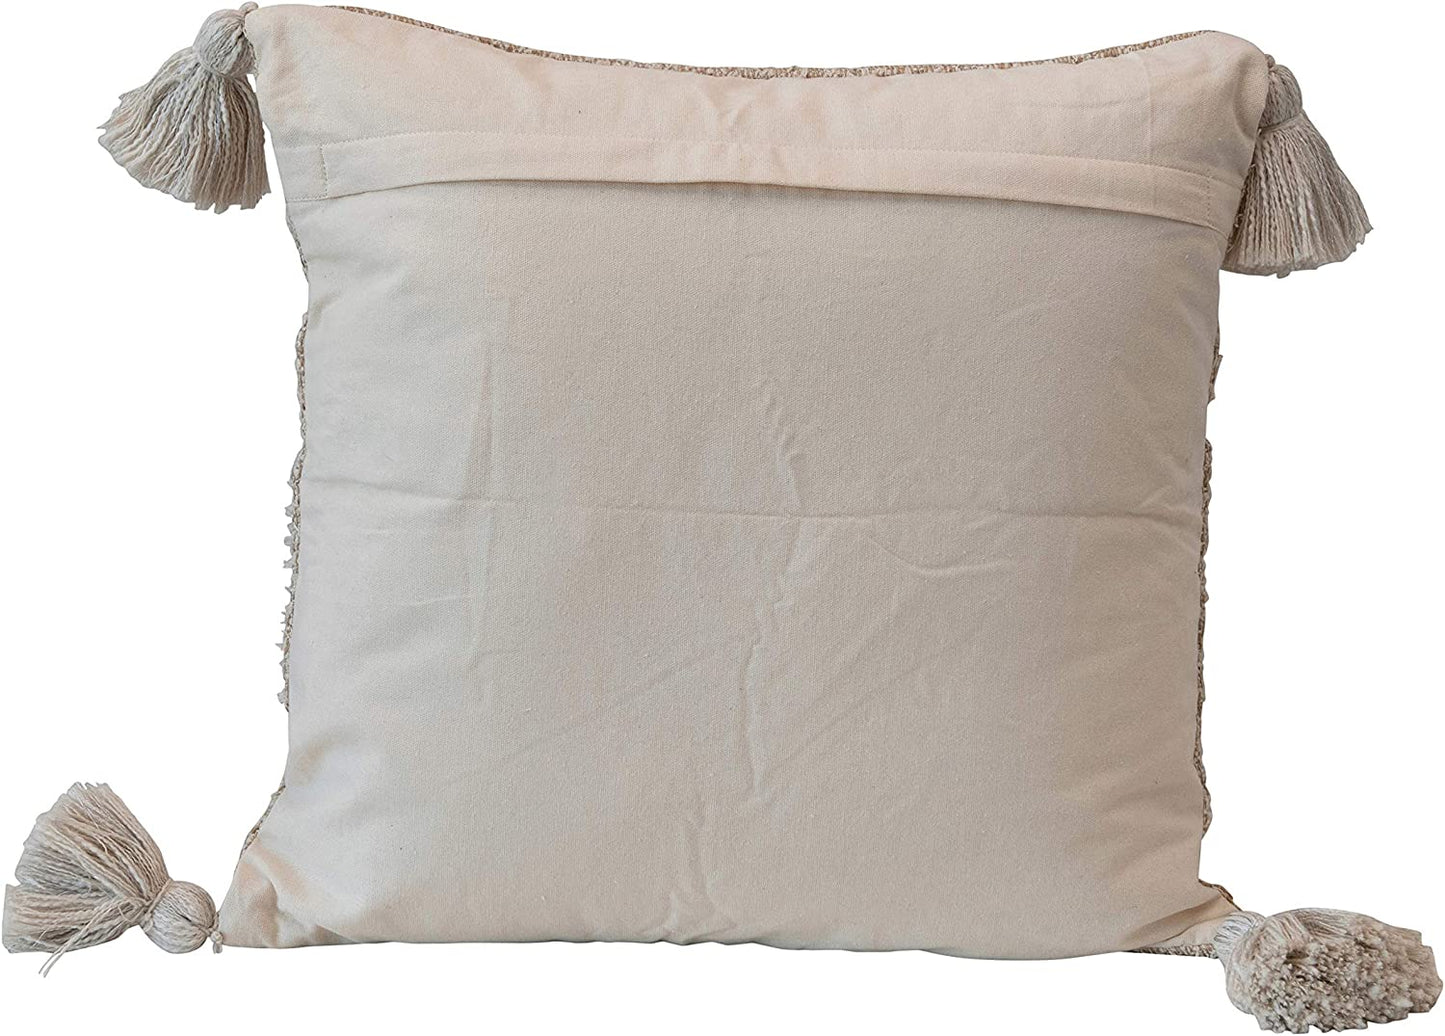 Cream & Tan Color Pillow